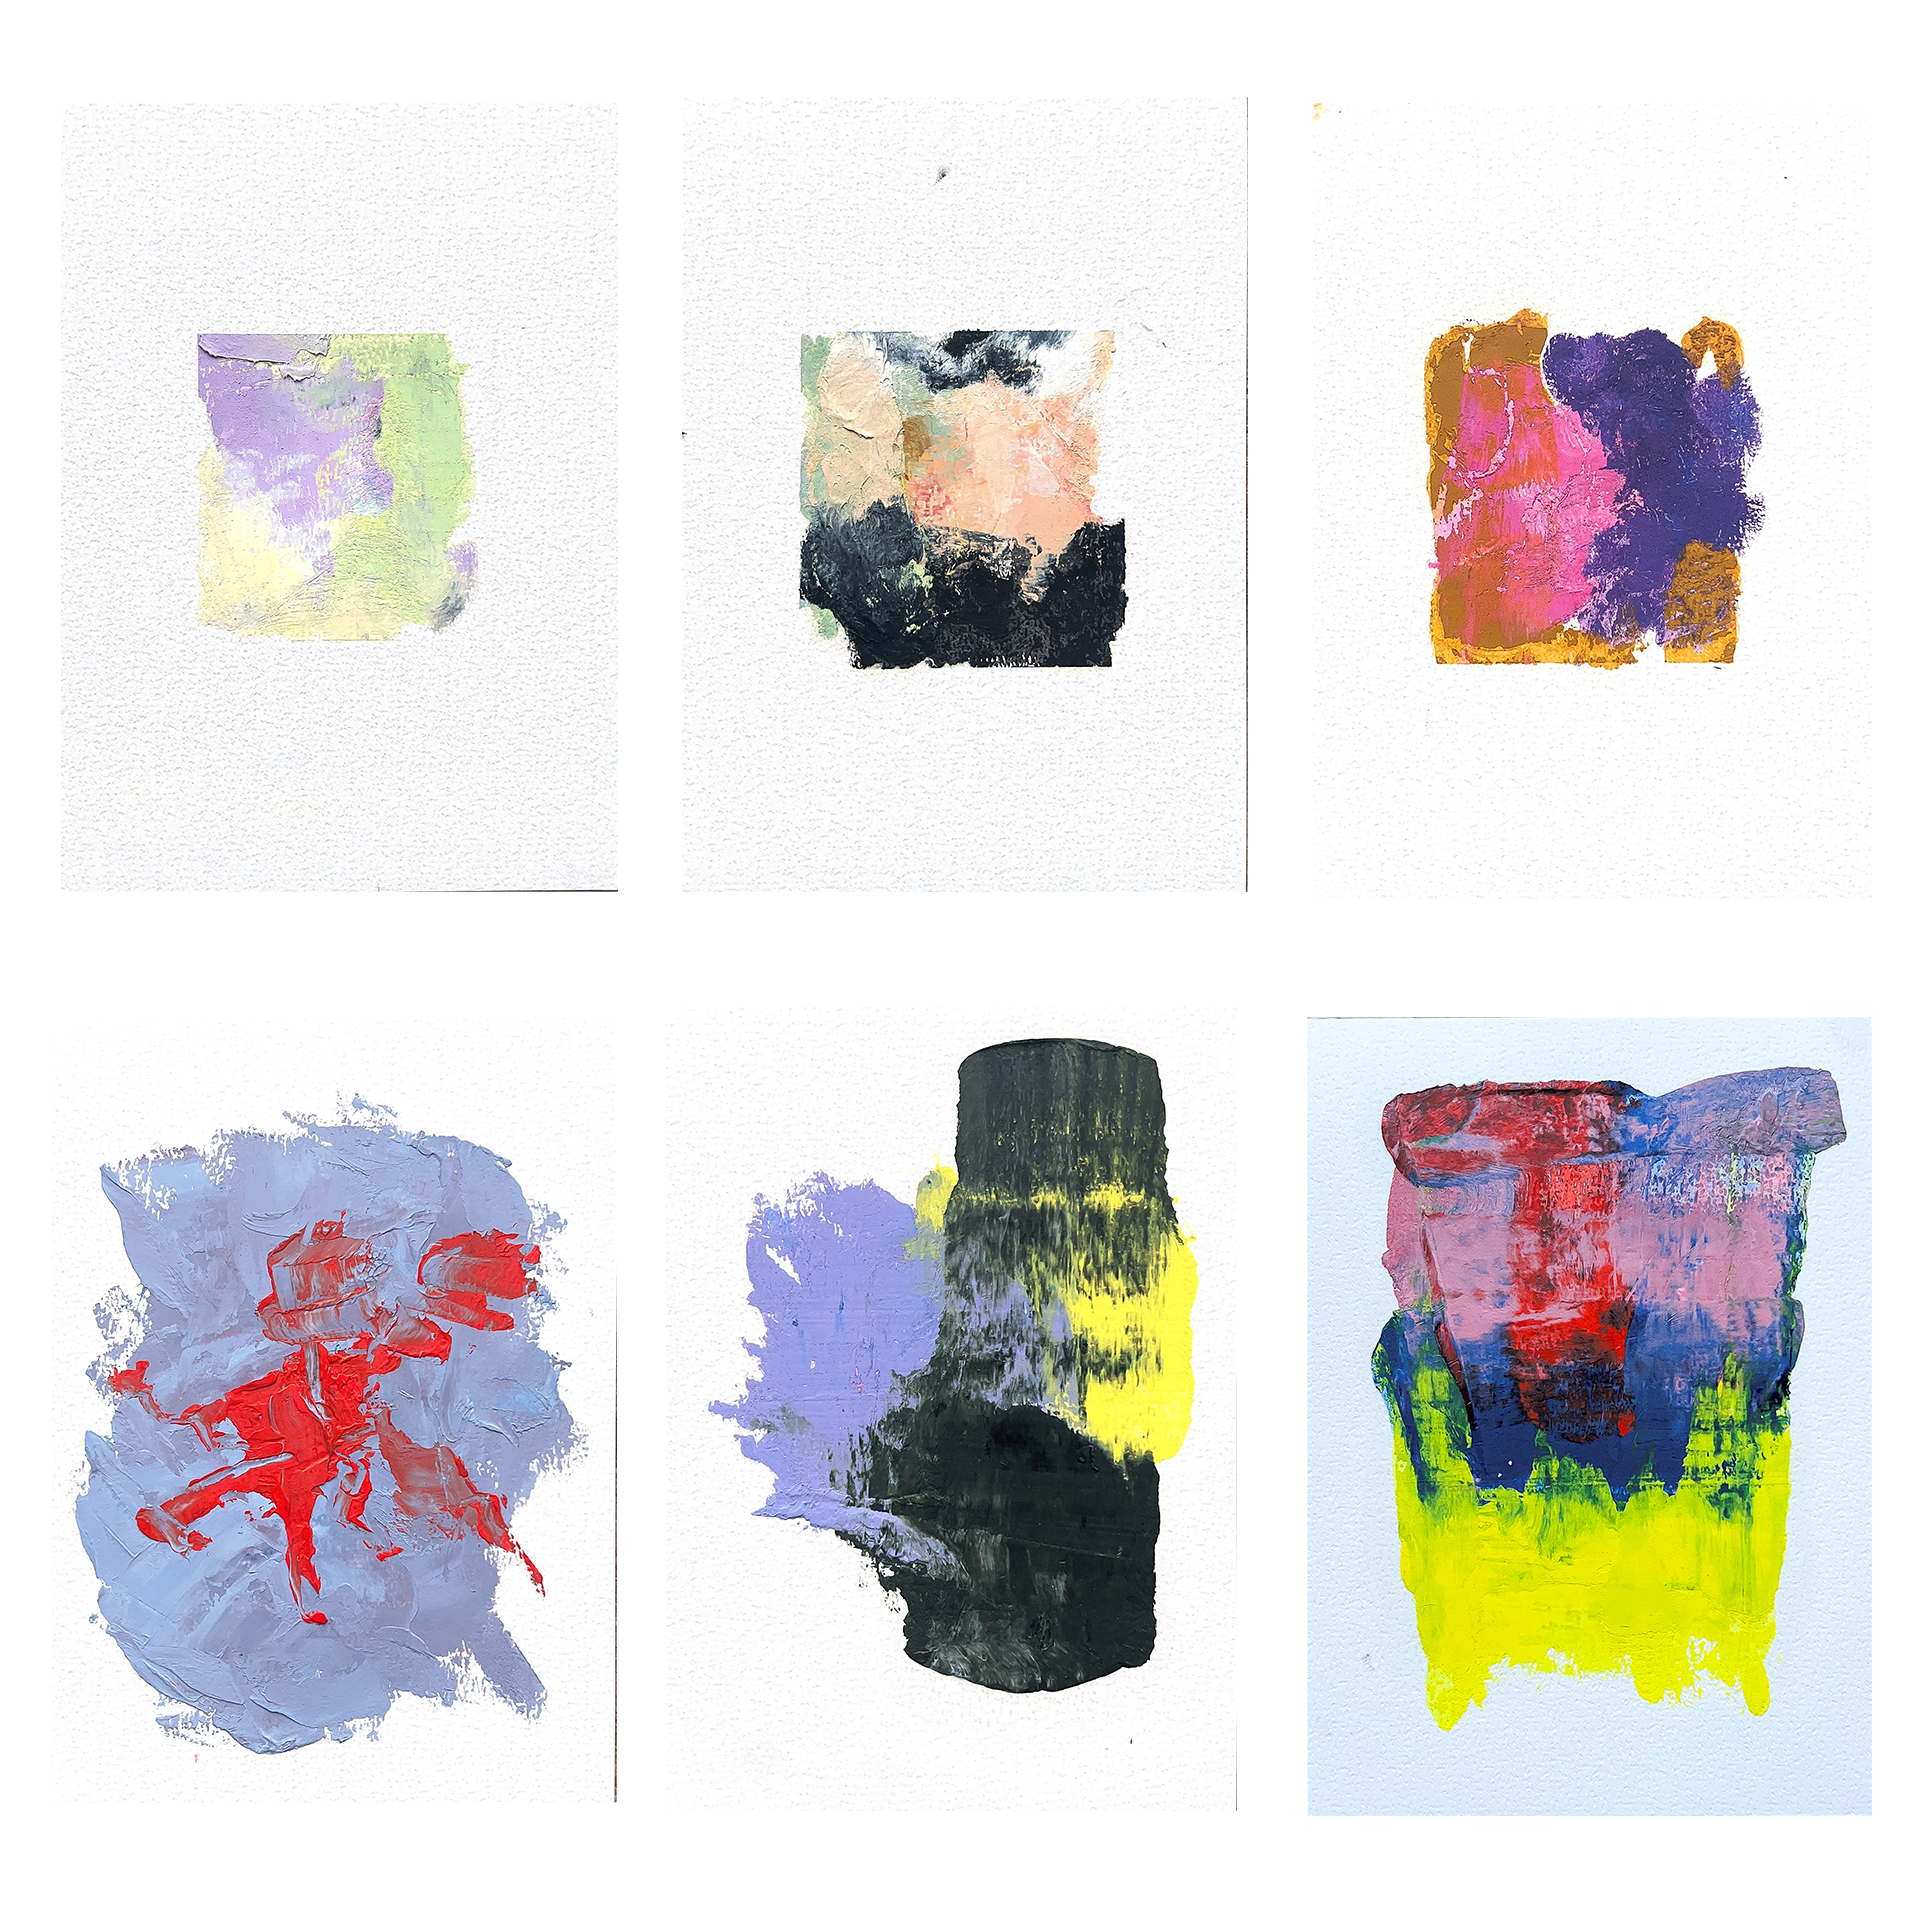 Dokumentacja sześciu obrazów powstałych za pomocą śladów farb olejnych. 